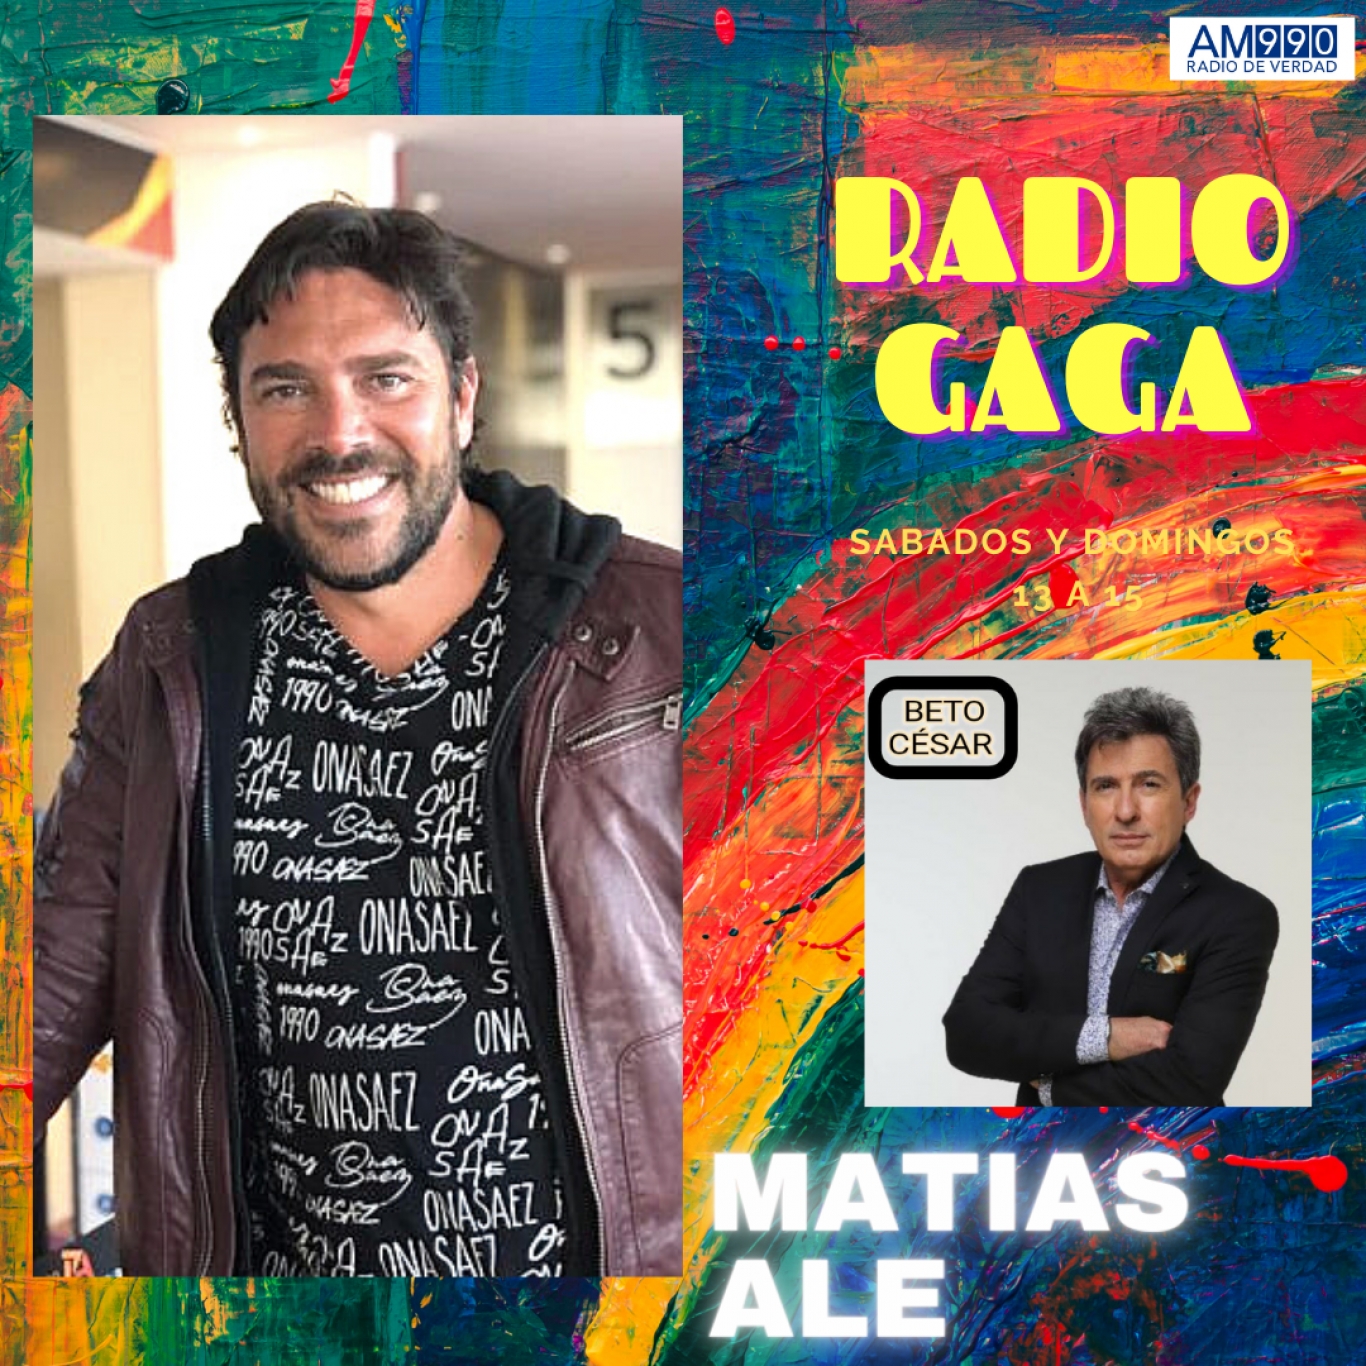 Hablamos con Matías Alé de su presente en Radio GaGa